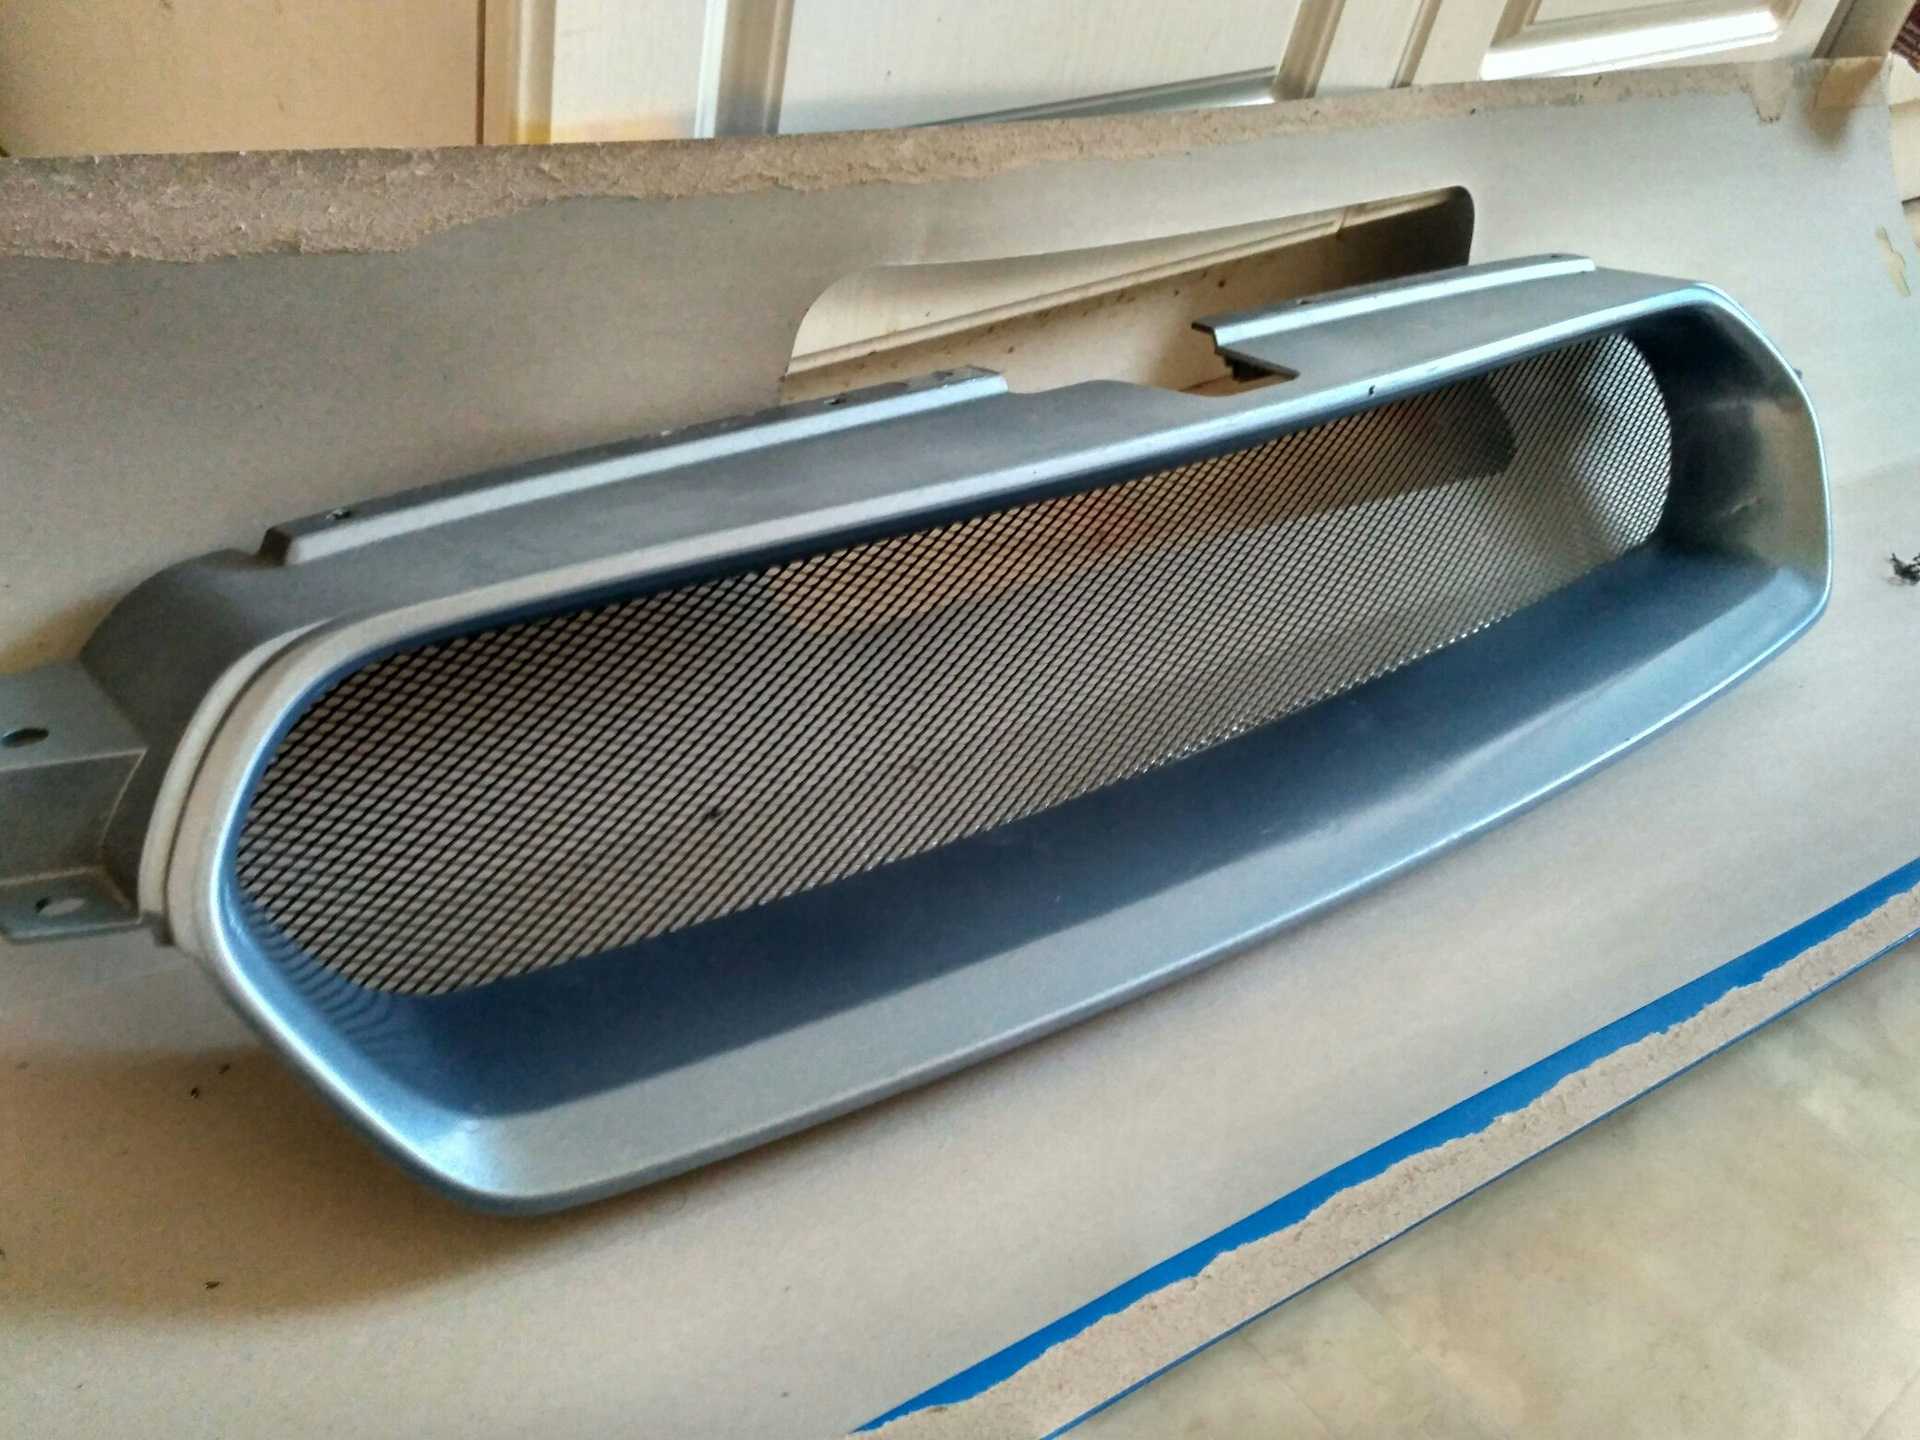 Тюнинг решетки радиатора — как добавить уникальности и улучшить внешний вид авто своими руками (95 фото)